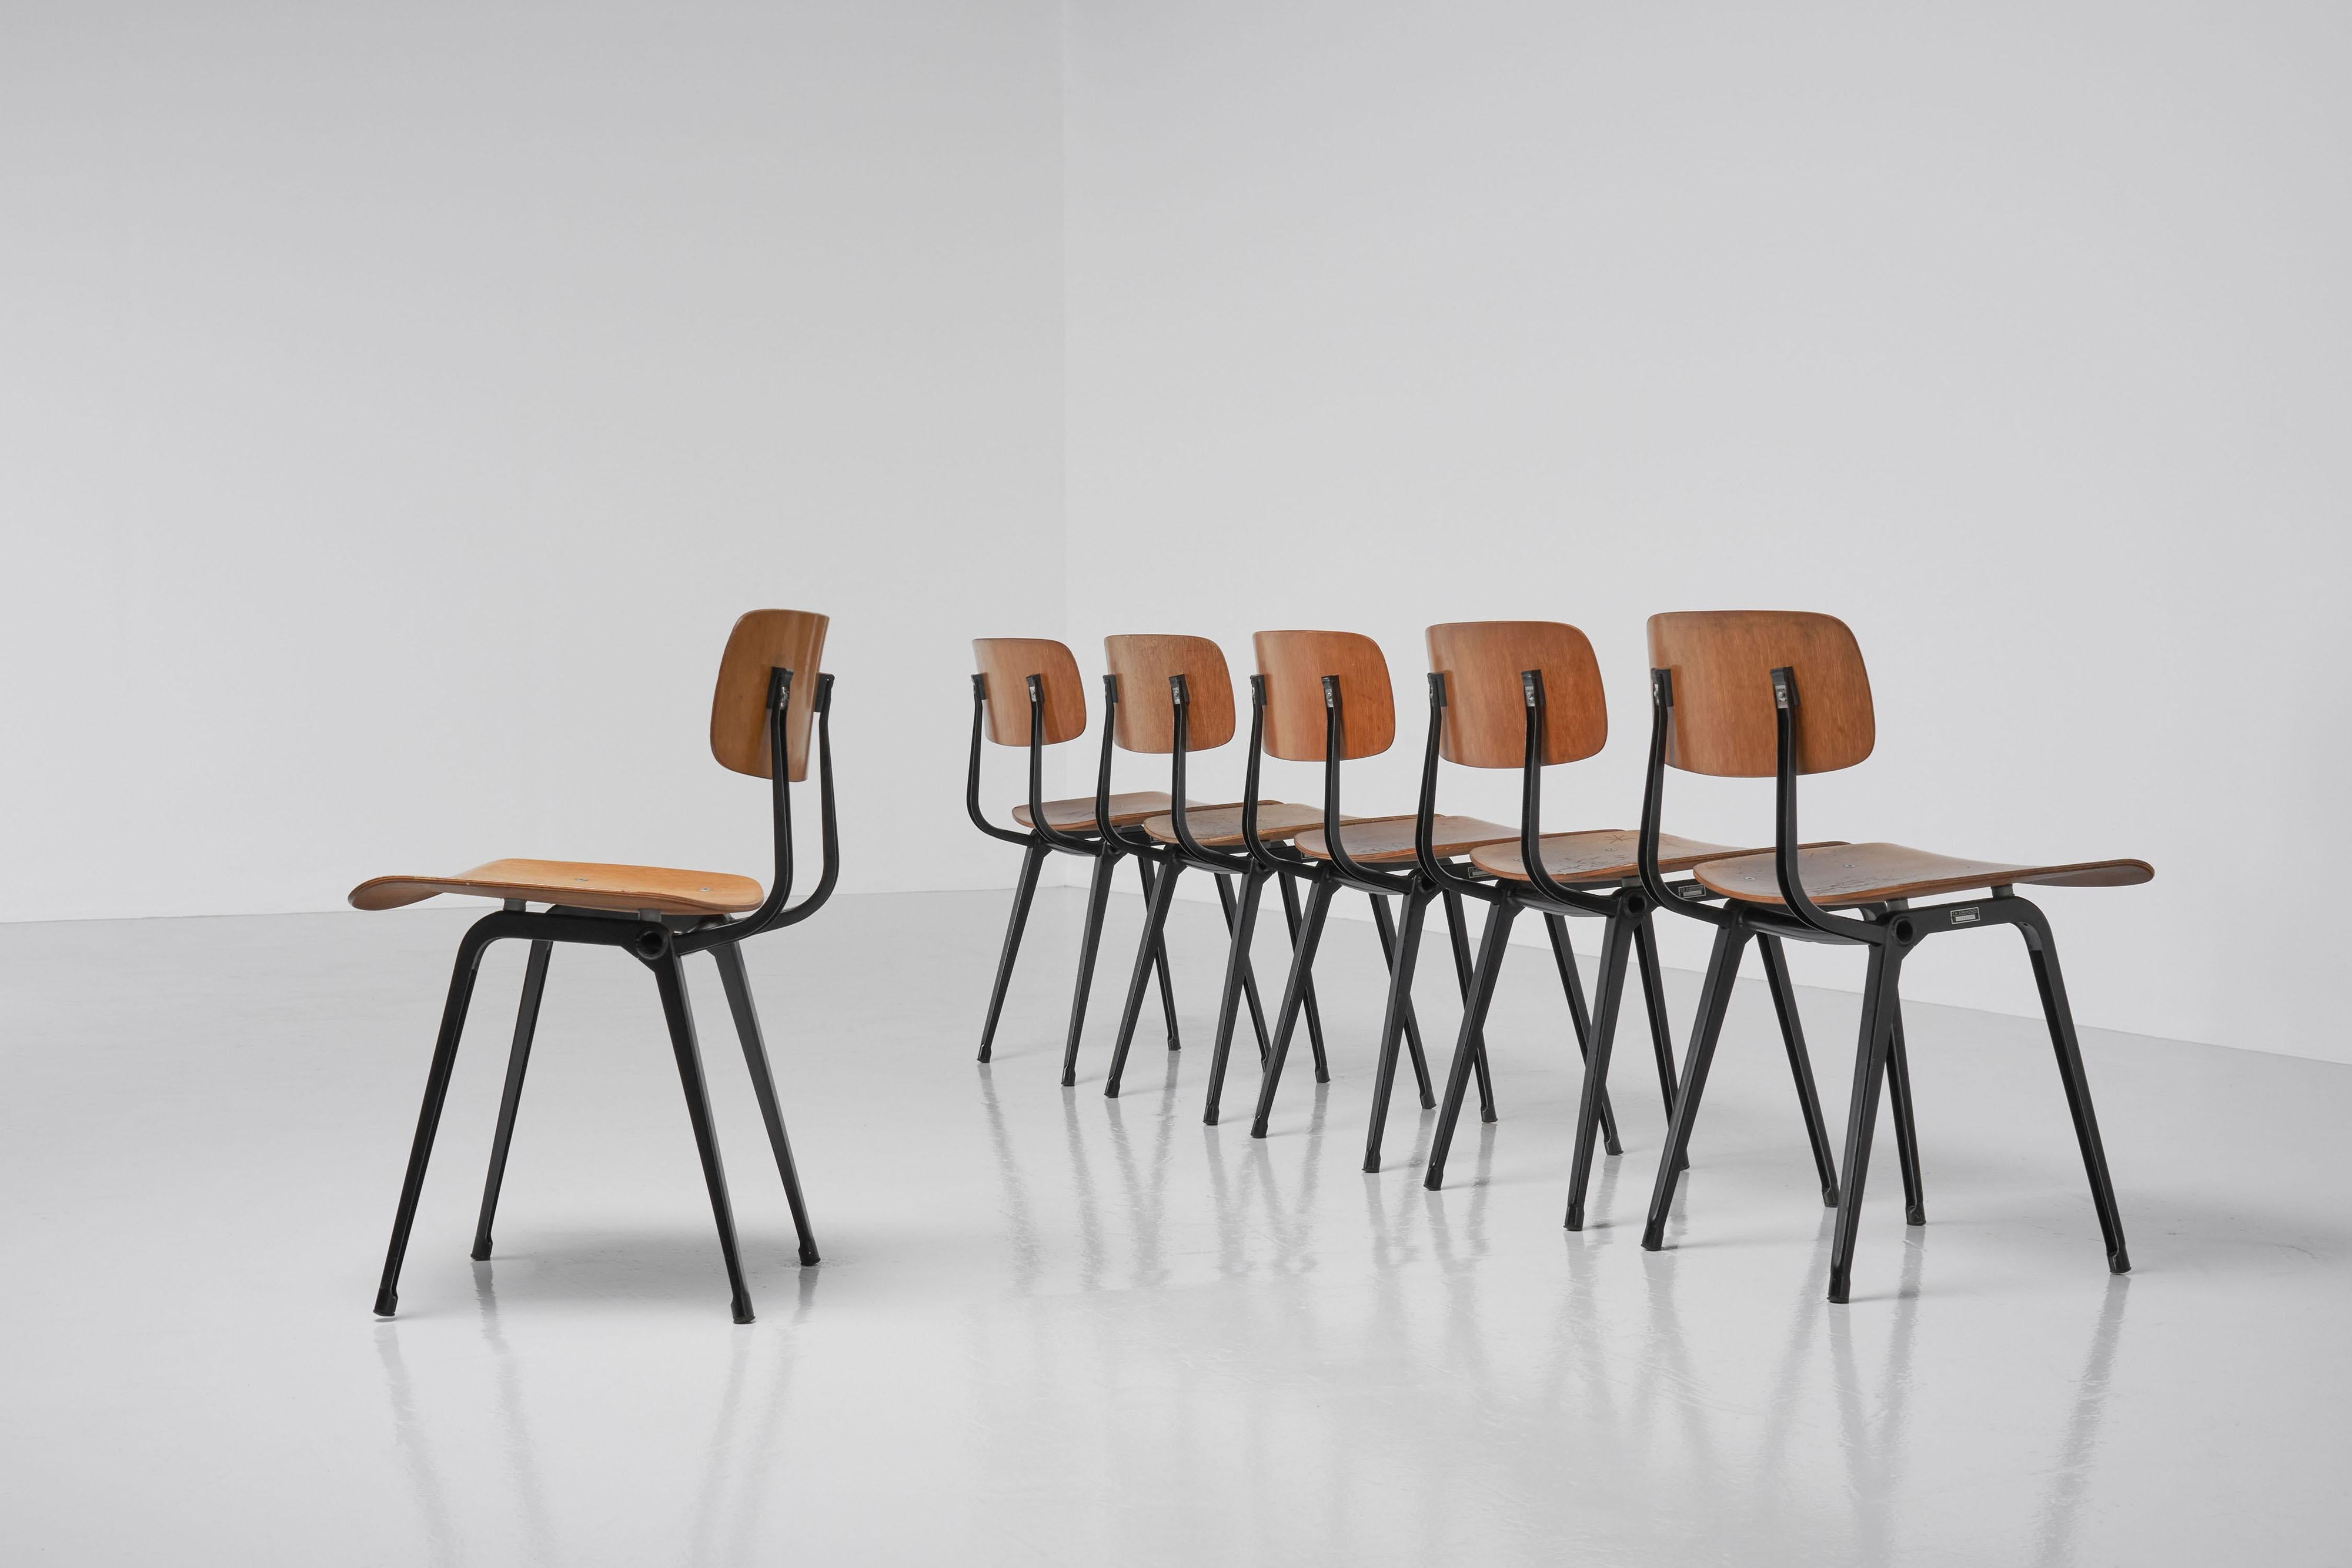 Superbe ensemble de 6 chaises de salle à manger originales Revolt conçues par Friso Kramer et fabriquées par Ahrend de Cirkel, Pays-Bas 1953. Bien que la chaise Revolt ait été conçue dès 1953, sa production a débuté en 1958. Ces chaises sont rares